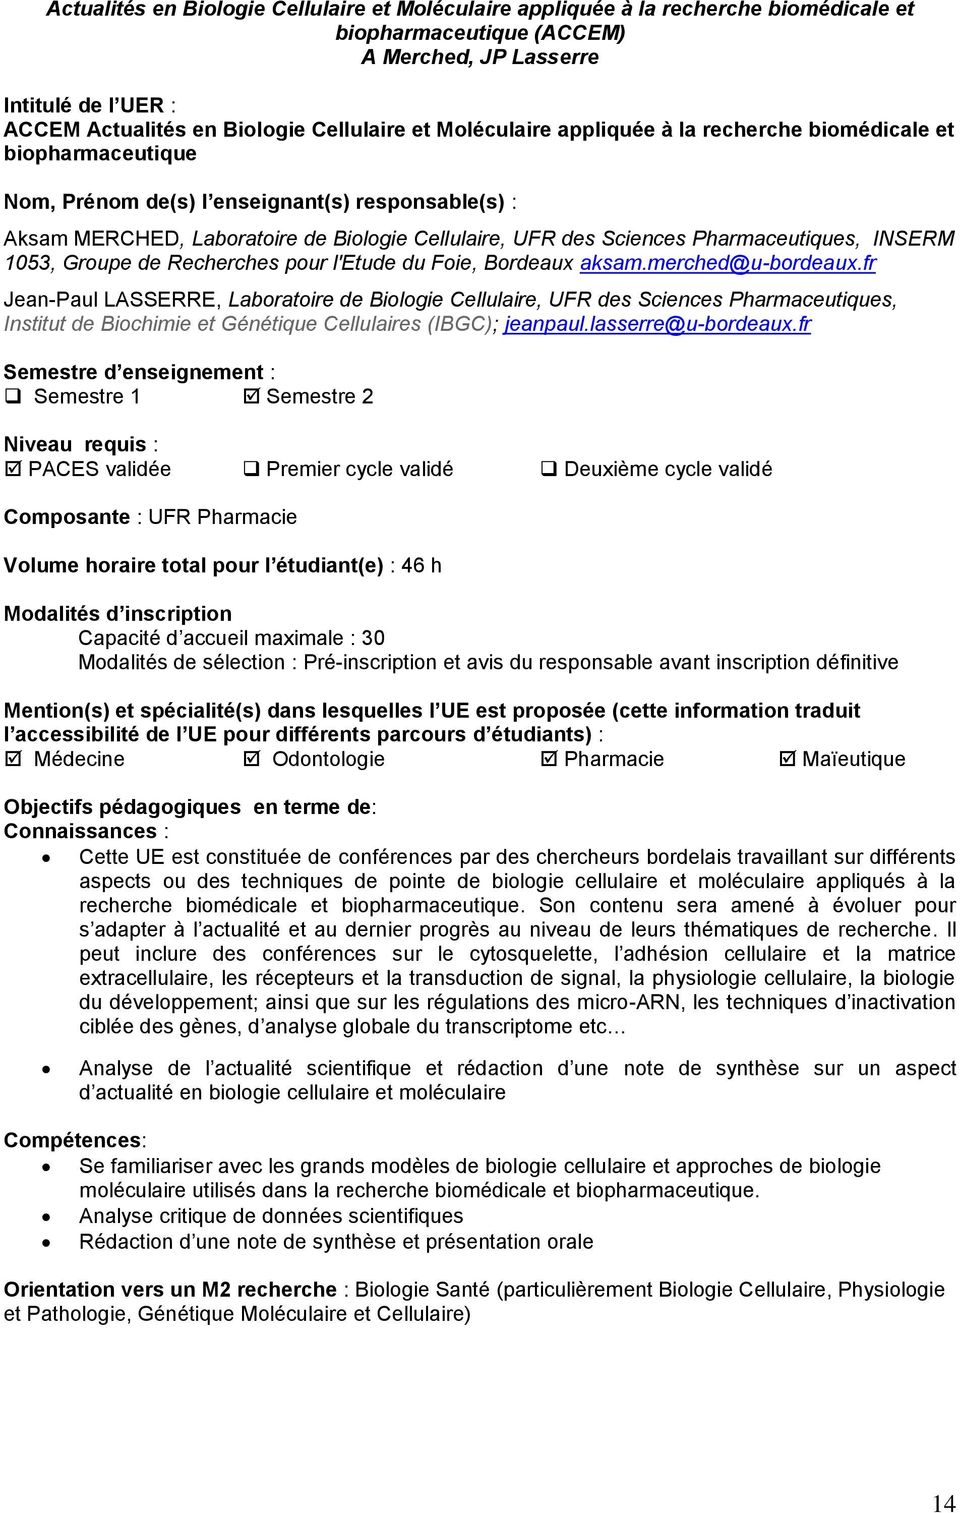 Pharmaceutiques, INSERM 1053, Groupe de Recherches pour l'etude du Foie, Bordeaux aksam.merched@u-bordeaux.